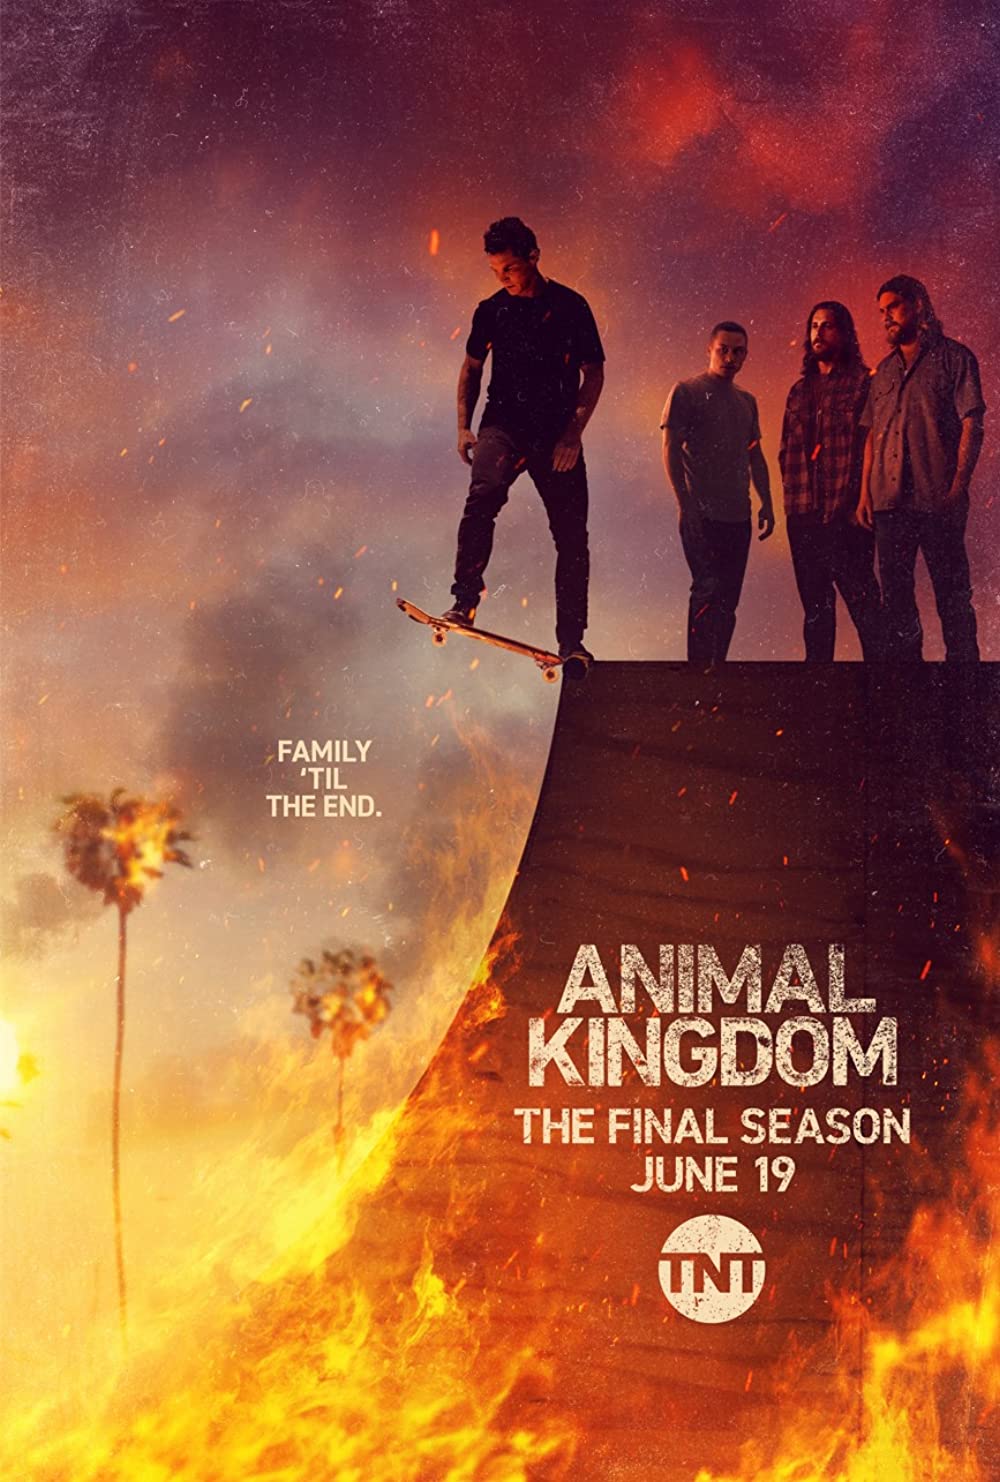 ดูหนังออนไลน์ Animal Kingdom Season 1 EP.8 แอนนิเมิล คิงด้อม ซีซั่น 1 ตอนที่ 8 (ซับไทย)